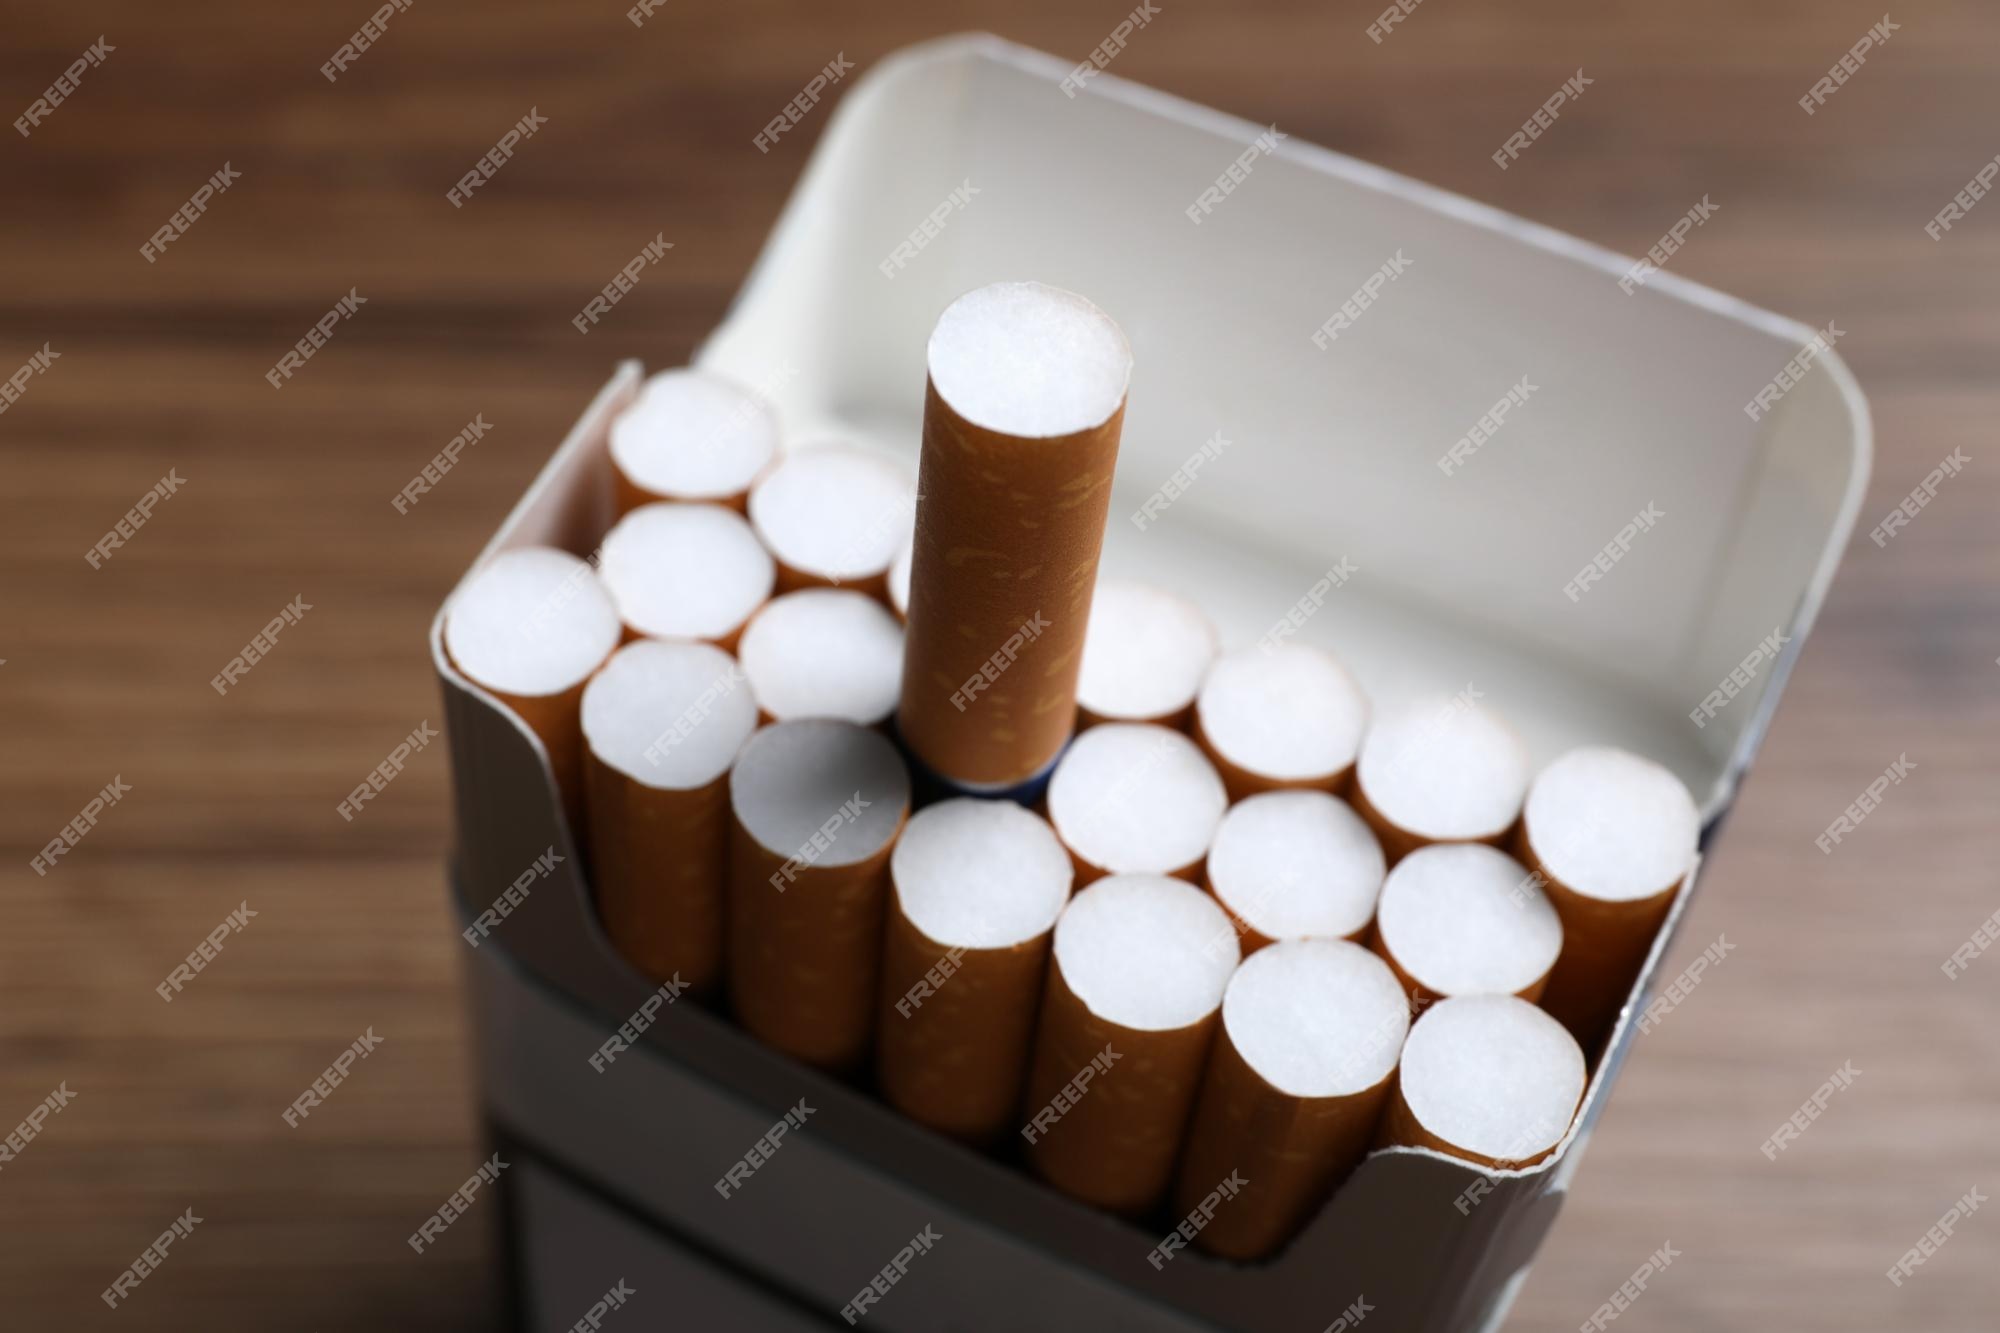  cigarettes online in Dubai